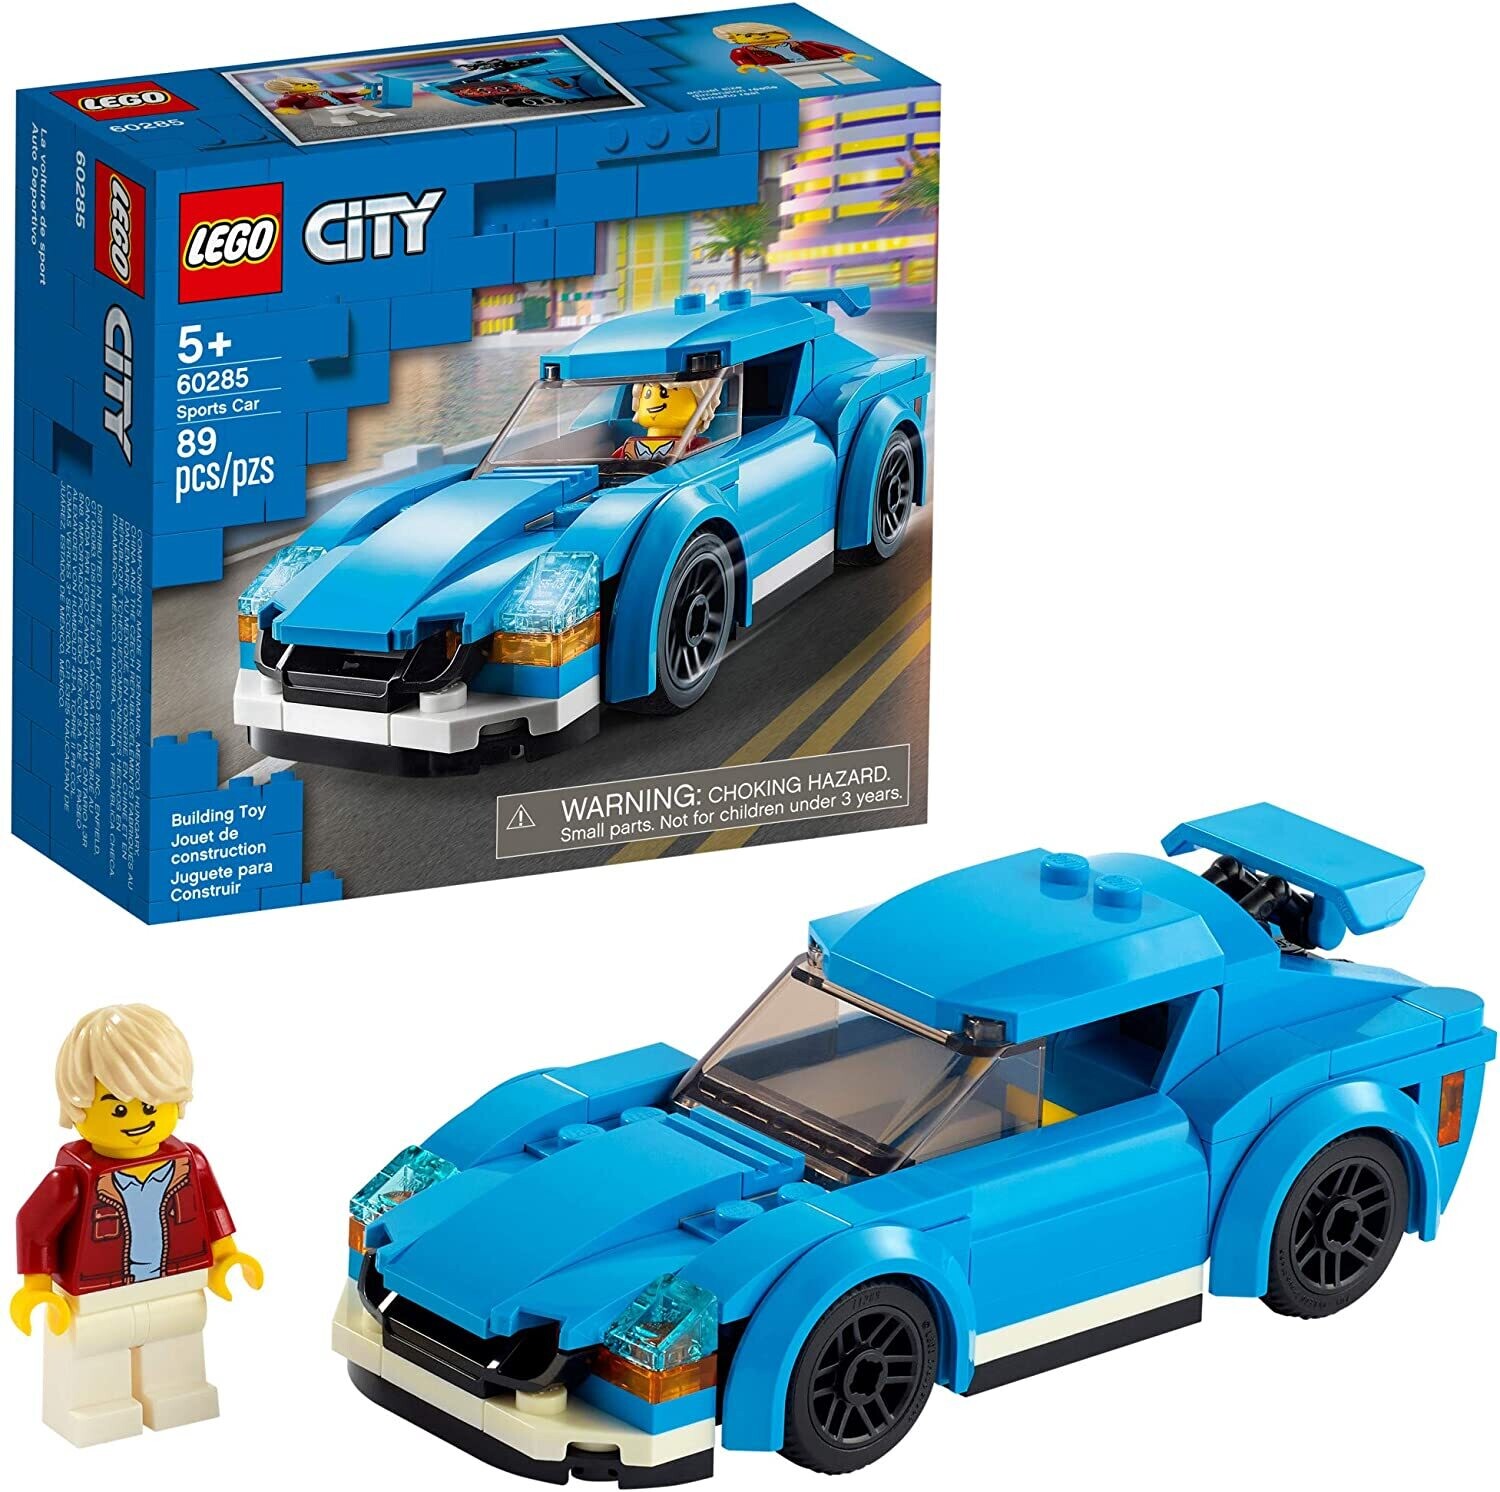 Lego 60285 Sports Car